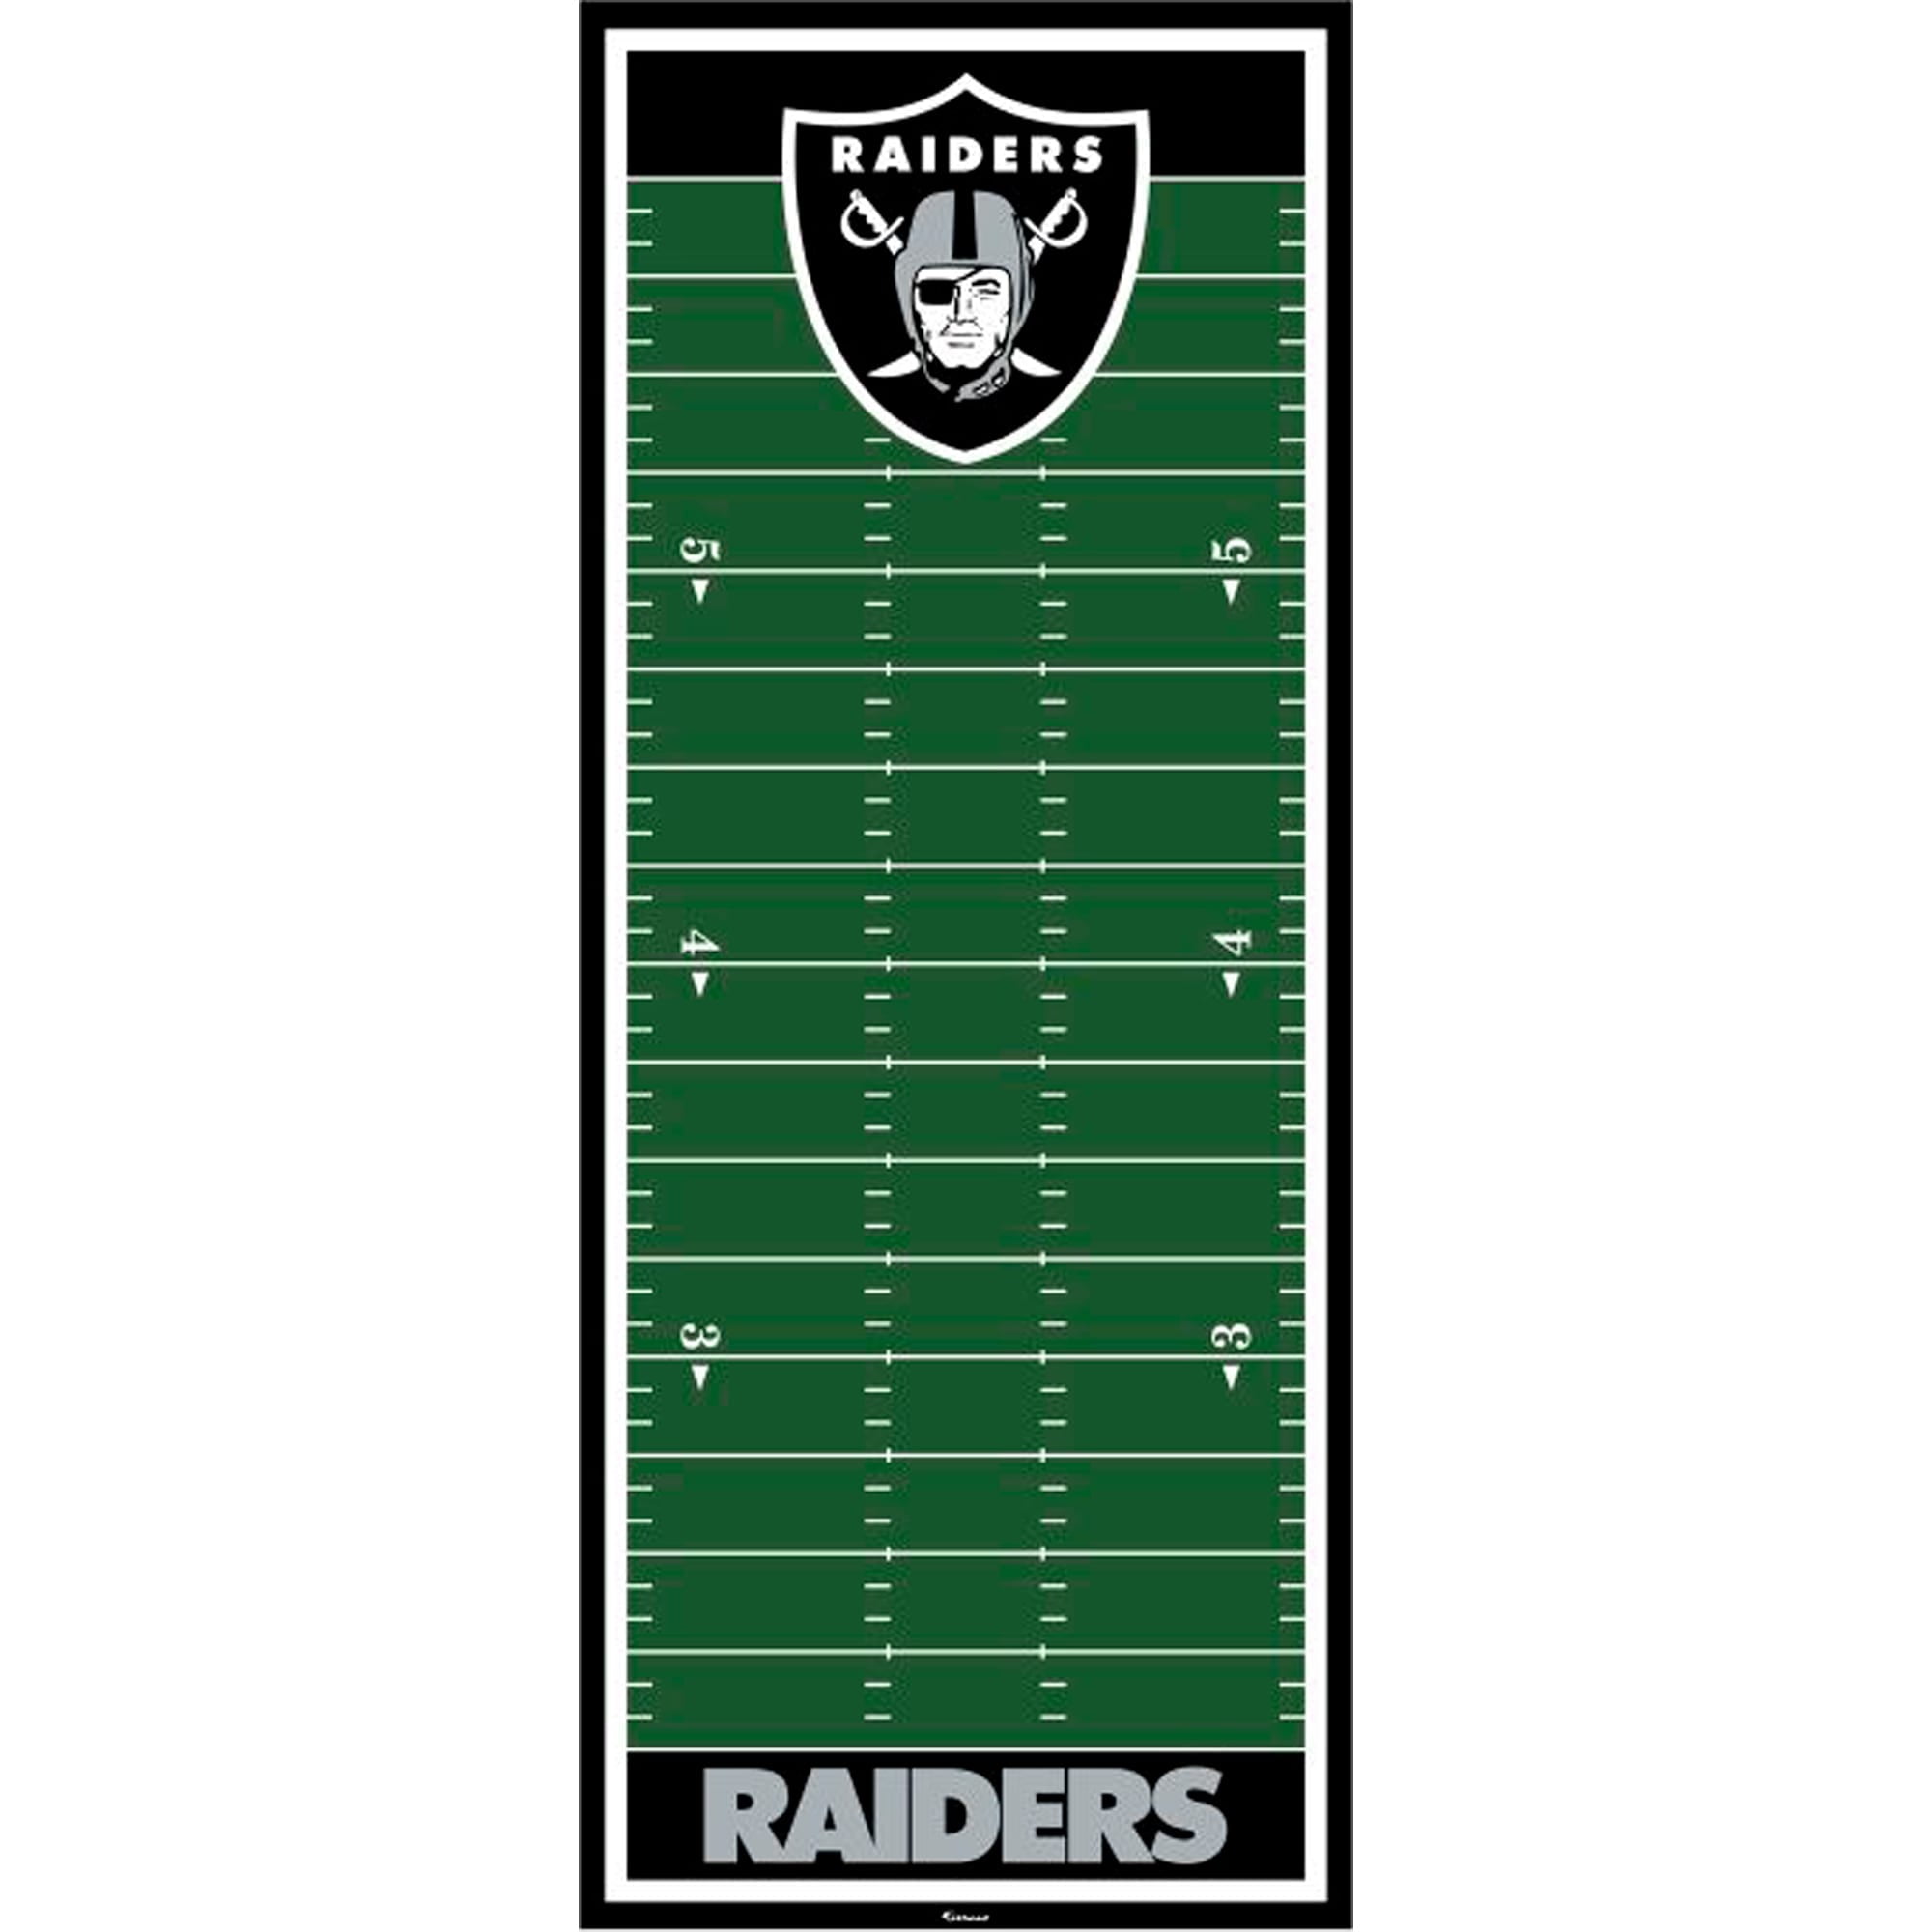 Officially Licensed NFL Las Vegas Raiders Vintage Logo Football Rug